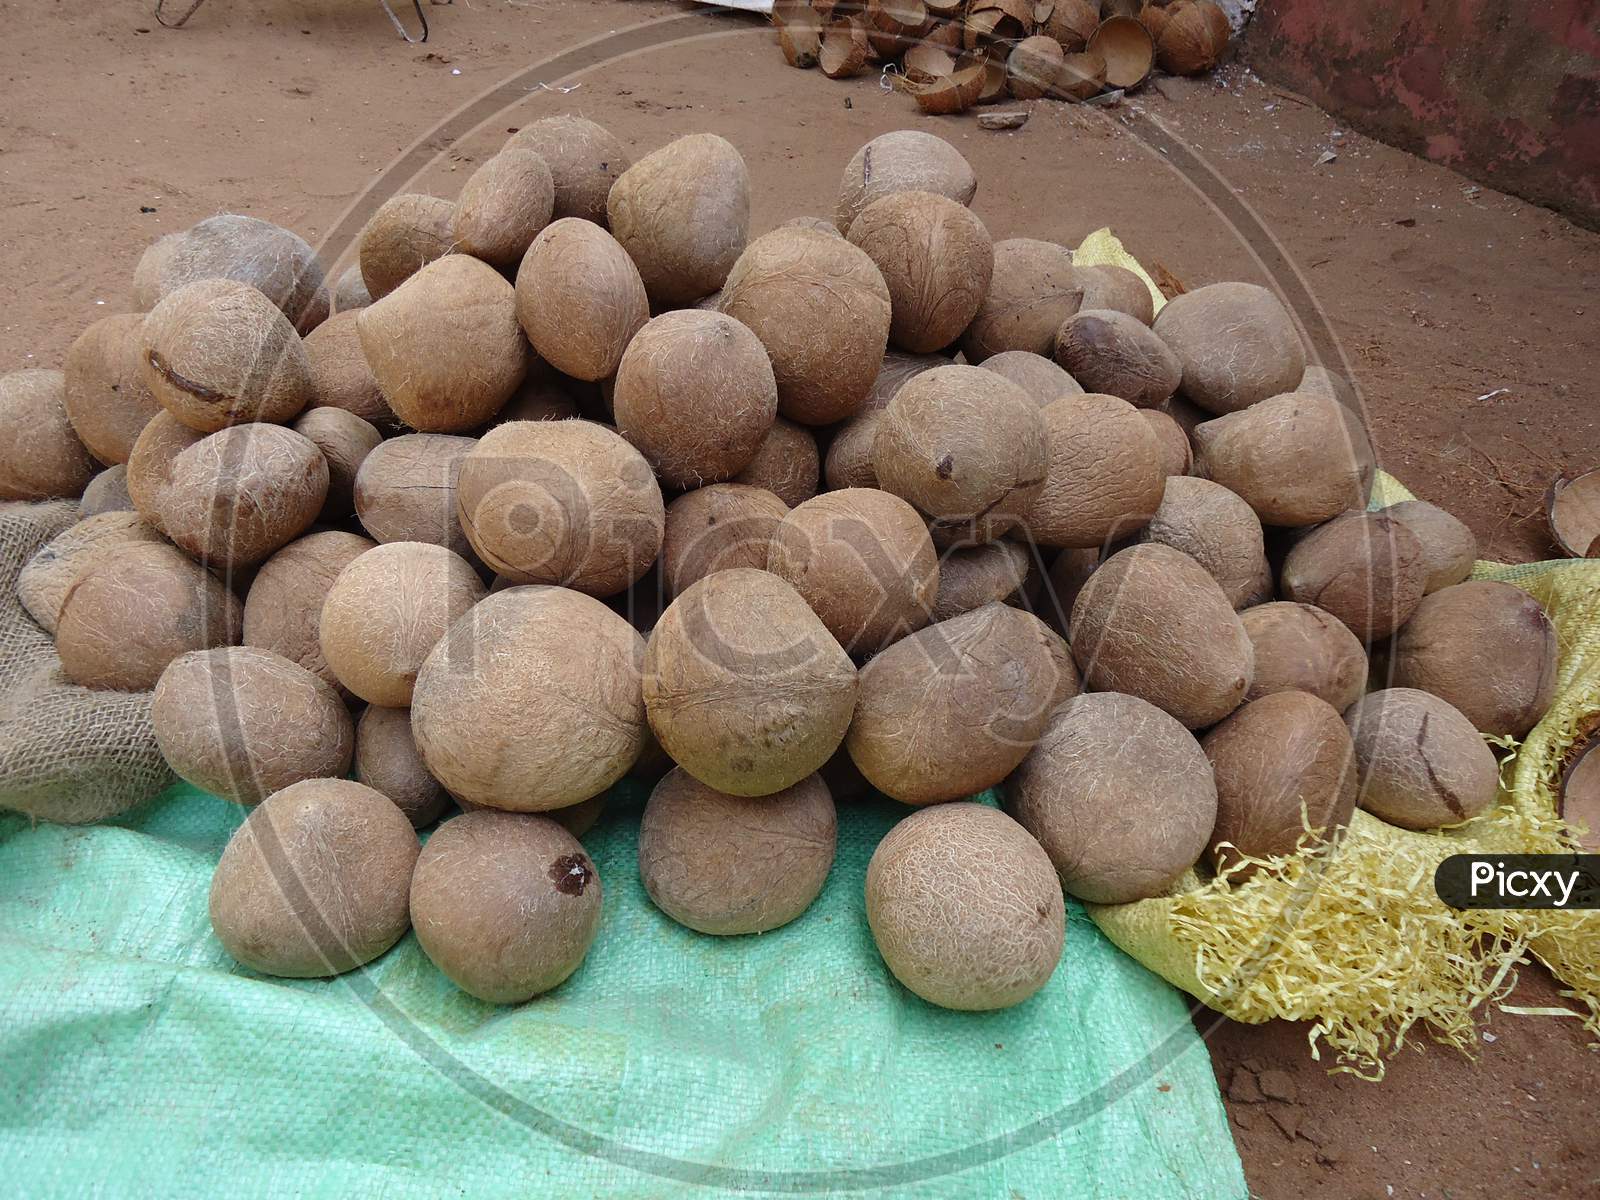 dry coconut, thalassery, kerala, india